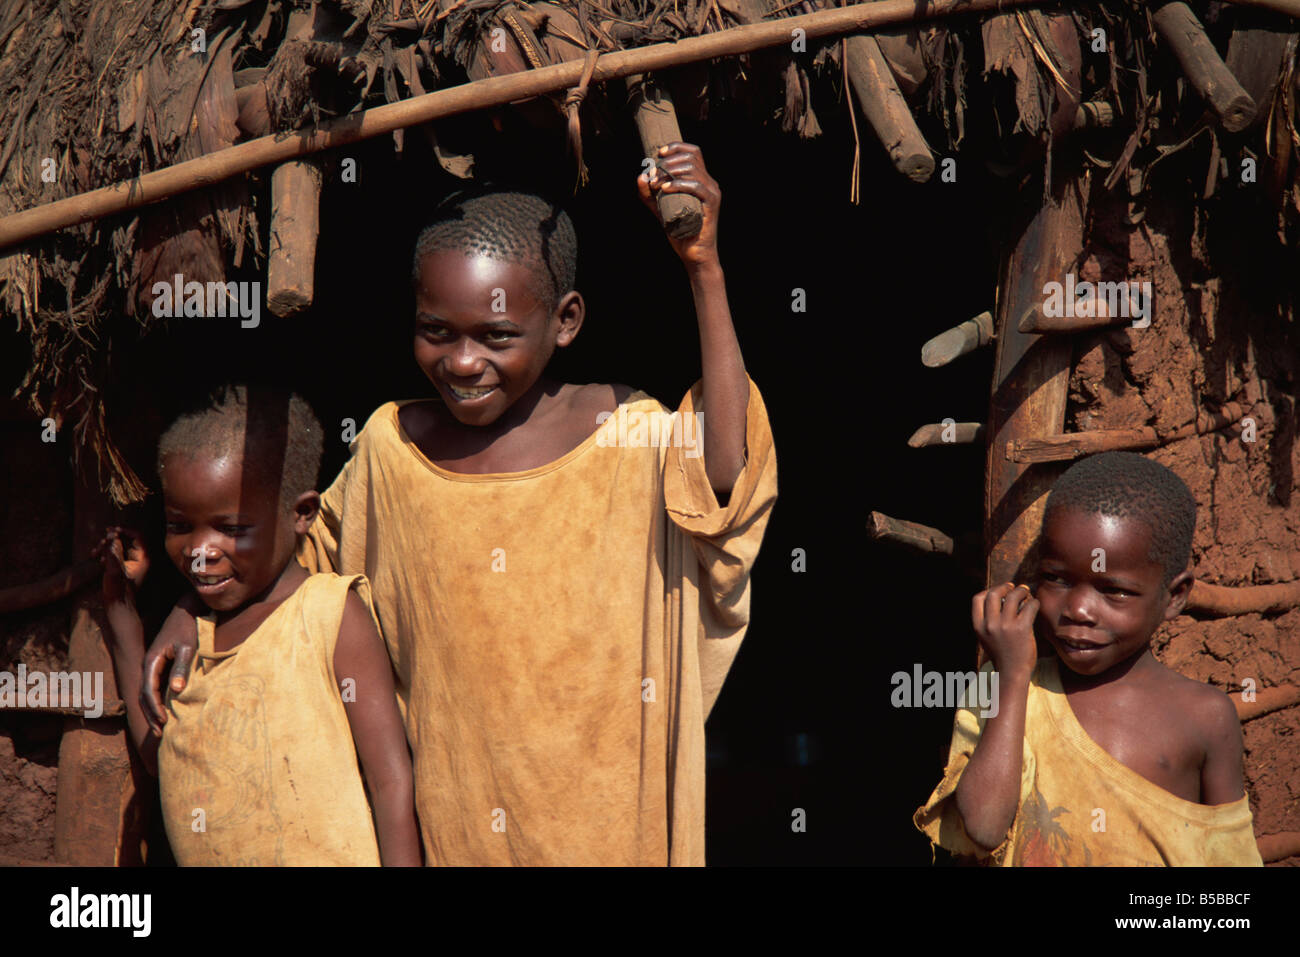 Enfants heureux à l'extérieur de l'Afrique de l'Est cabane de torchis Ouganda Afrique Banque D'Images